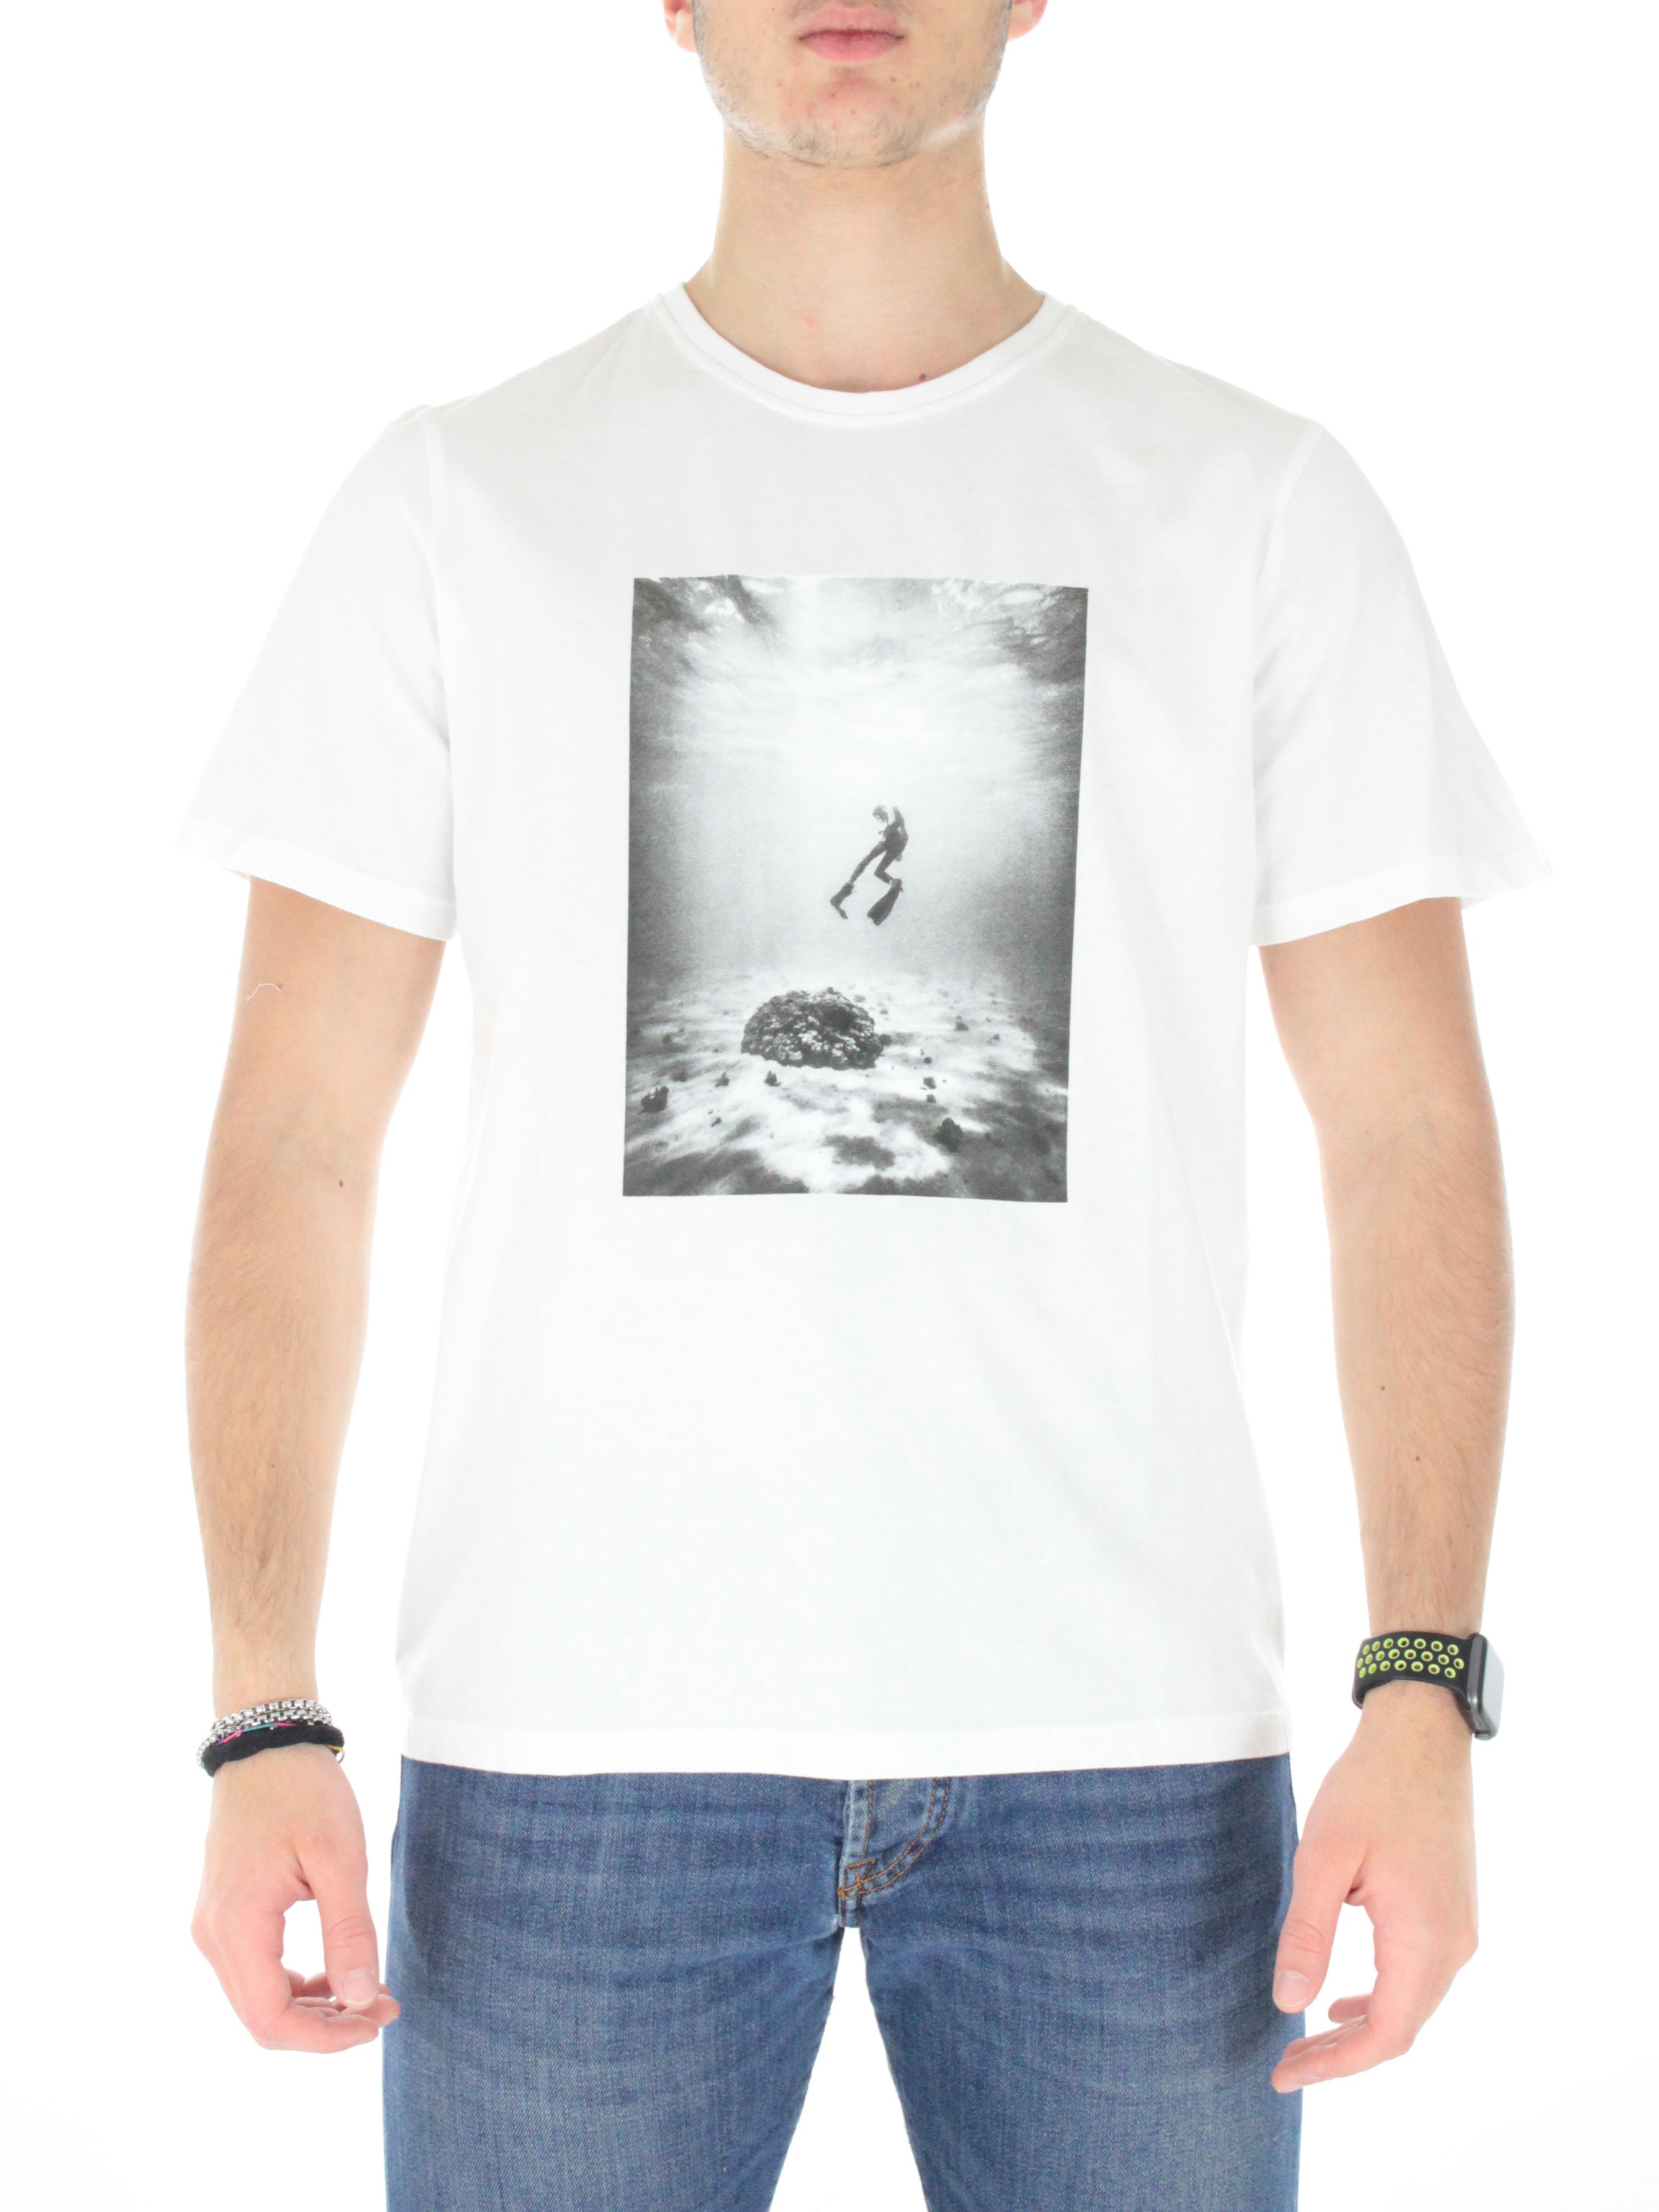 Saonalf t-shirt Gatssona8032m white